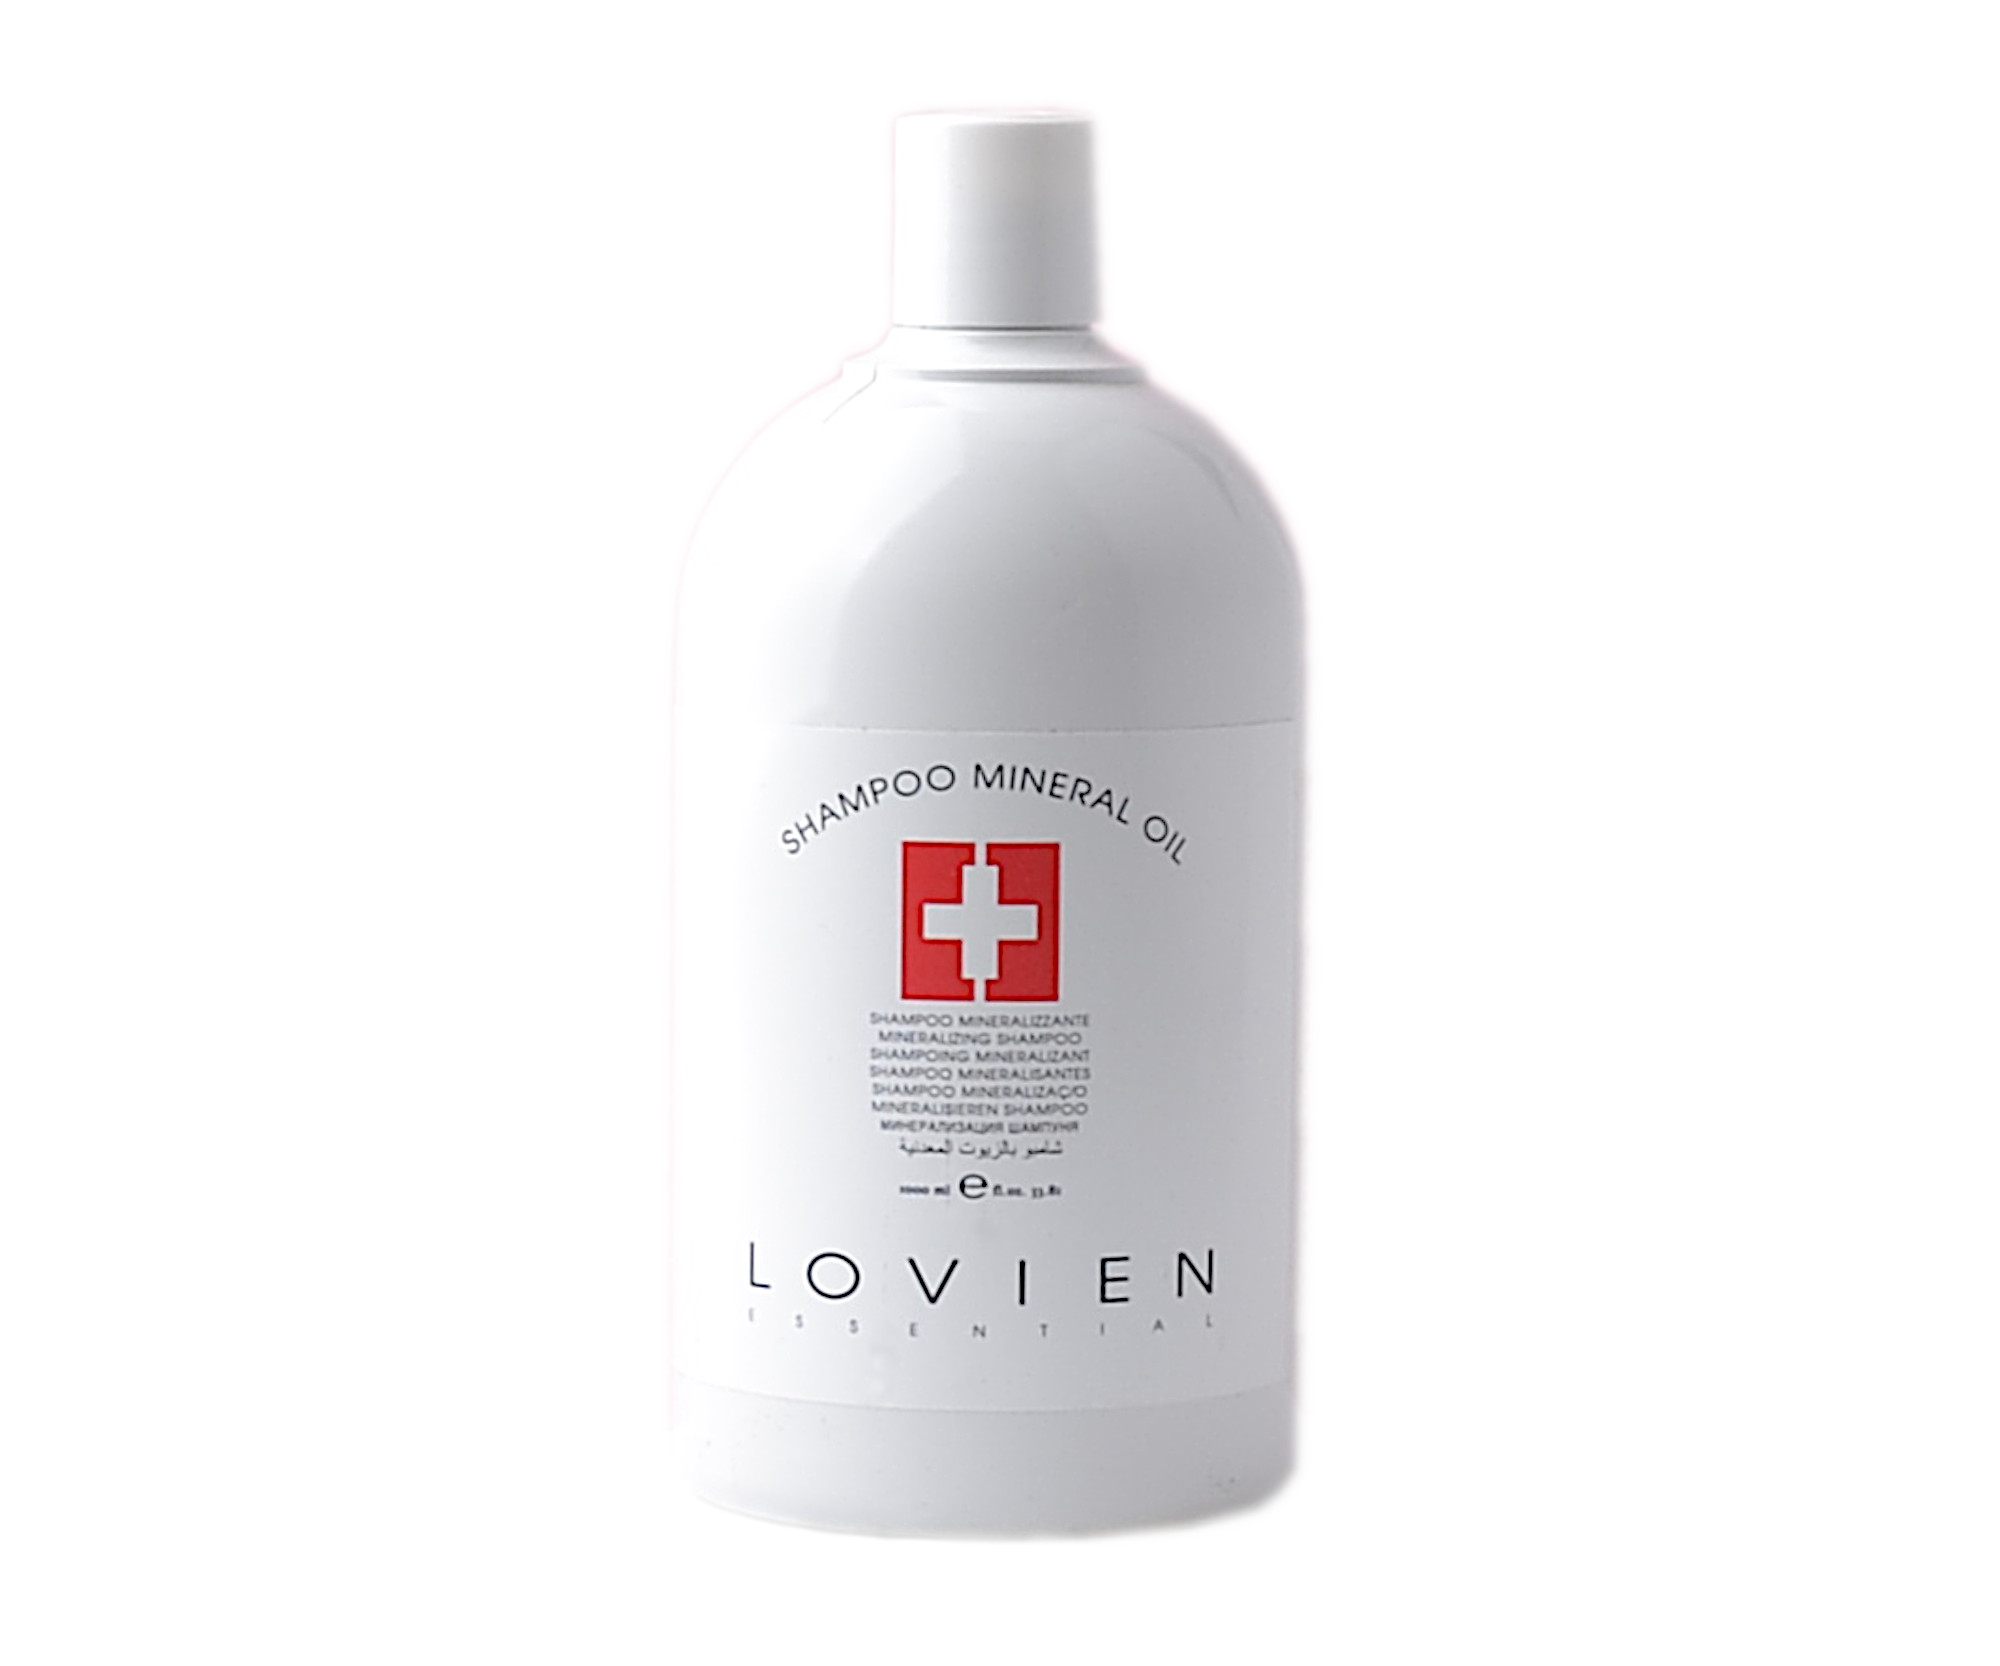 Šampon pro suché a poškozené vlasy Lovien Essential Shampoo Mineral Oil - 1000 ml (69) + dárek zdarma